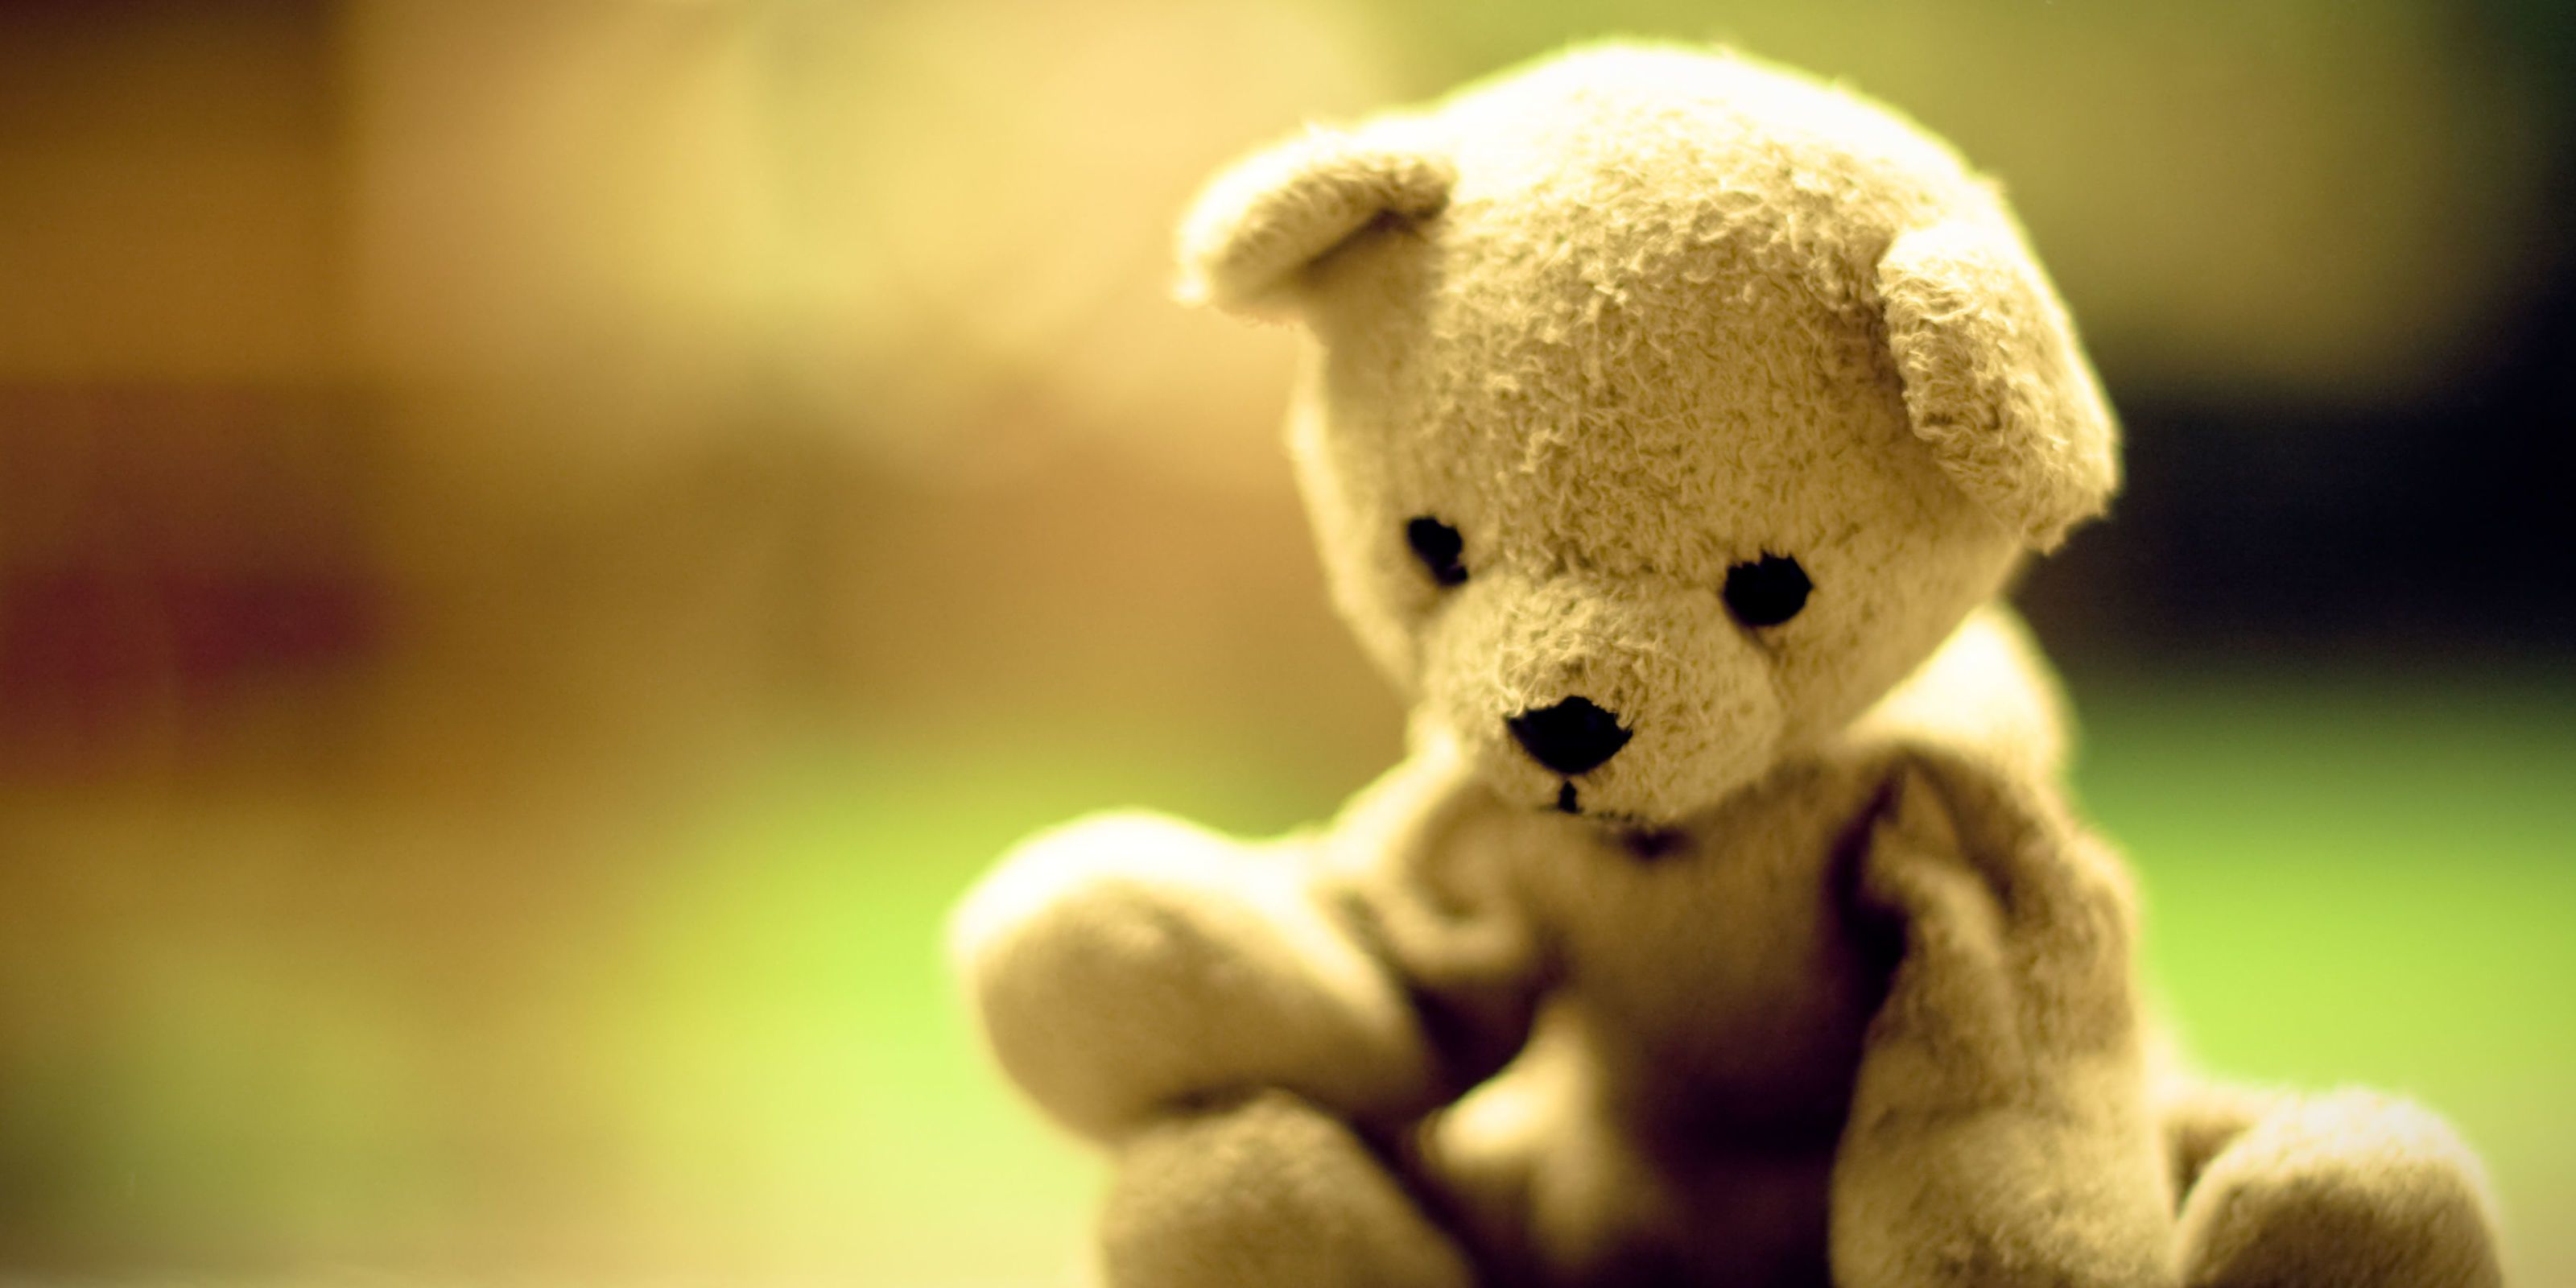 teddy roosevelt teddy bear story